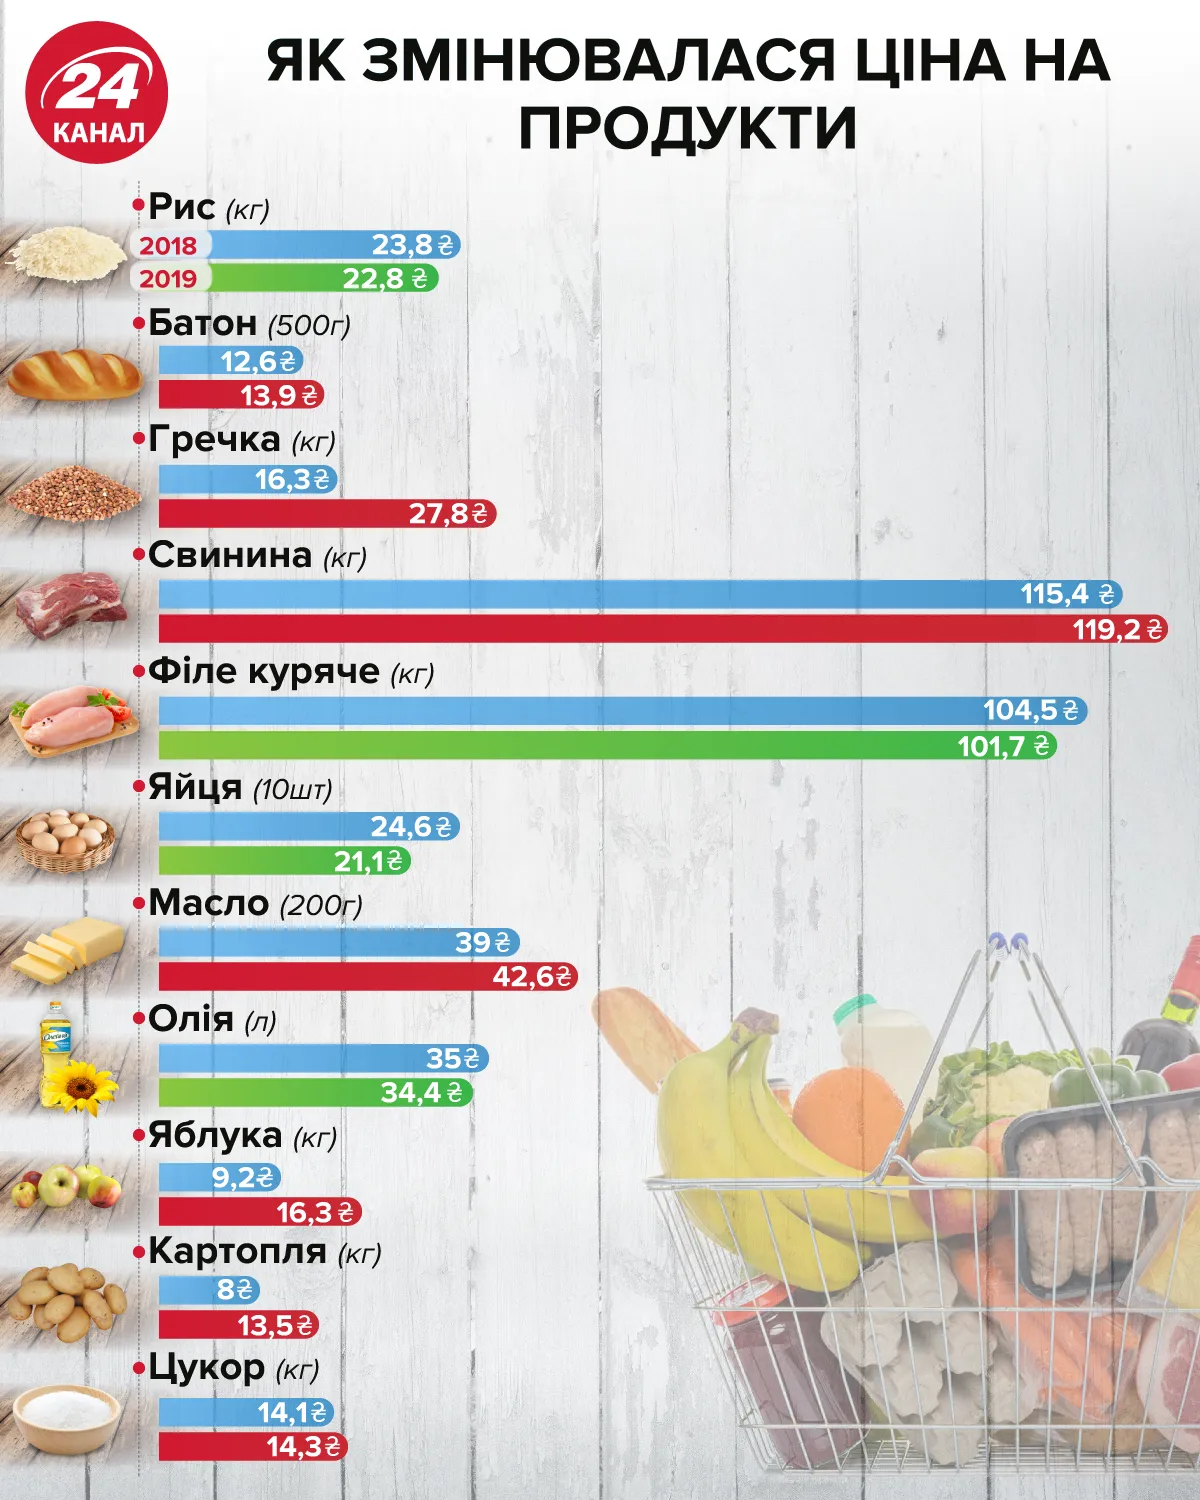 Как менялись цены напродукты Инфографика 24 канал